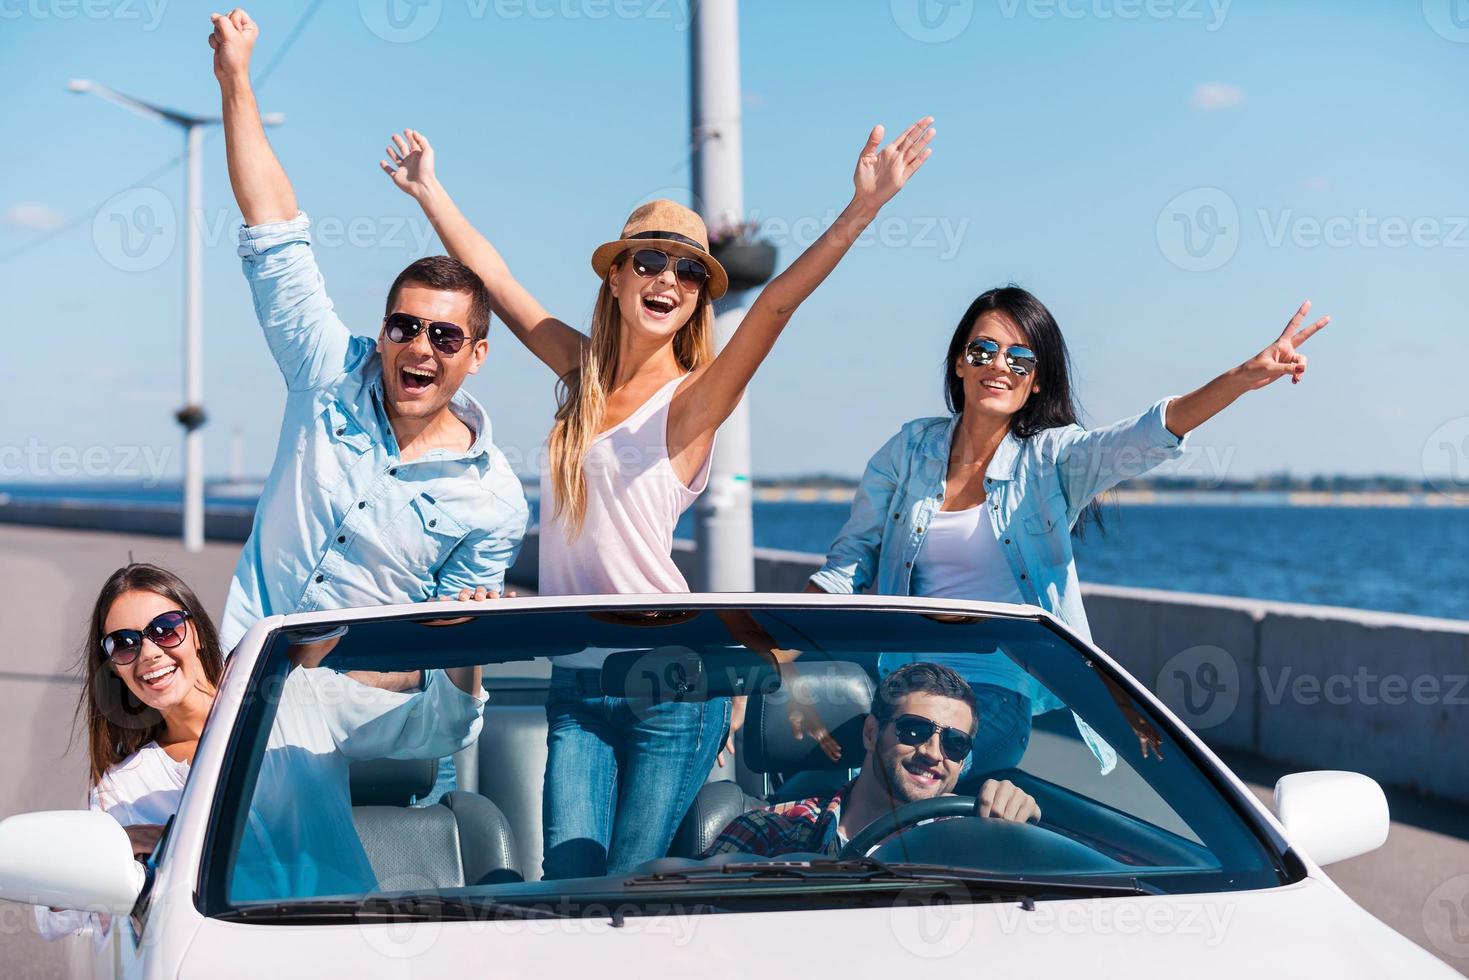 passando muito tempo no conversível. grupo de jovens felizes curtindo a viagem em seu conversível branco e levantando os braços foto